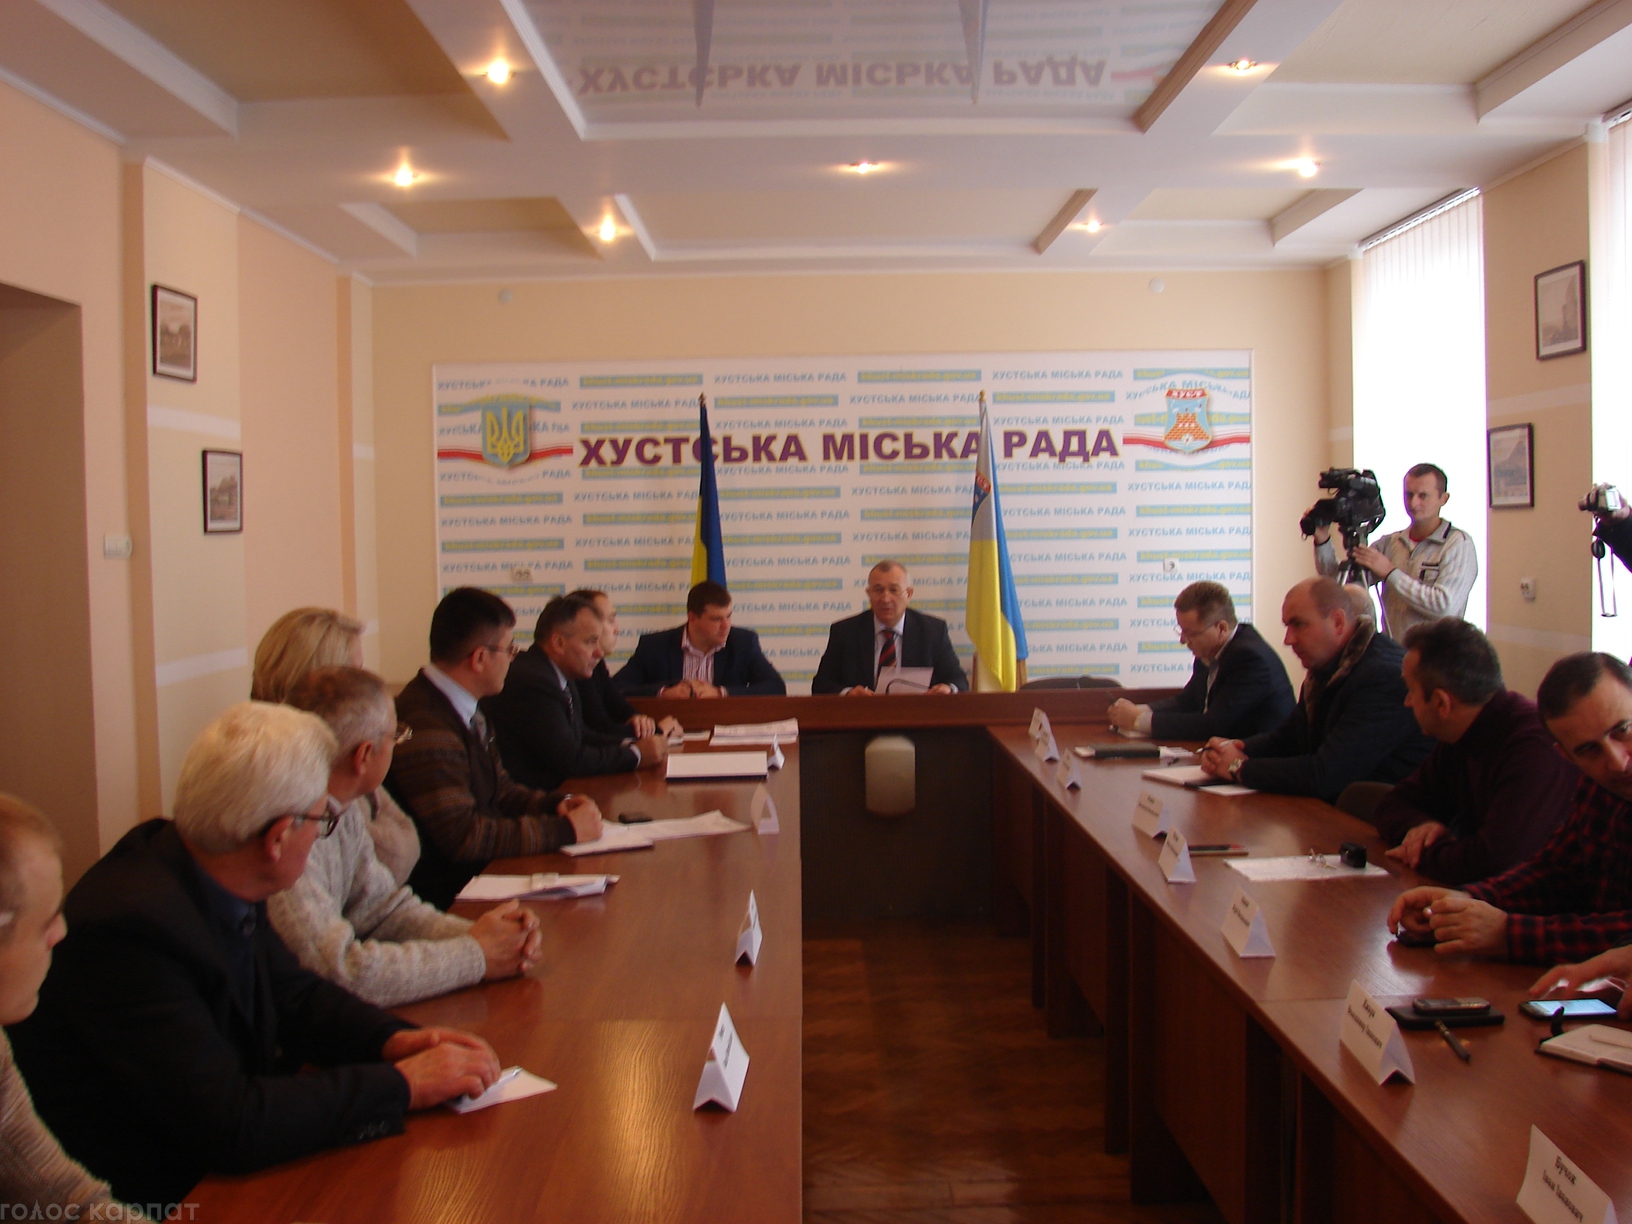 16 листопада відбулося чергове засідання виконавчого комітету Хустської міської ради, яке провів очільник міста Володимир Кащук. 